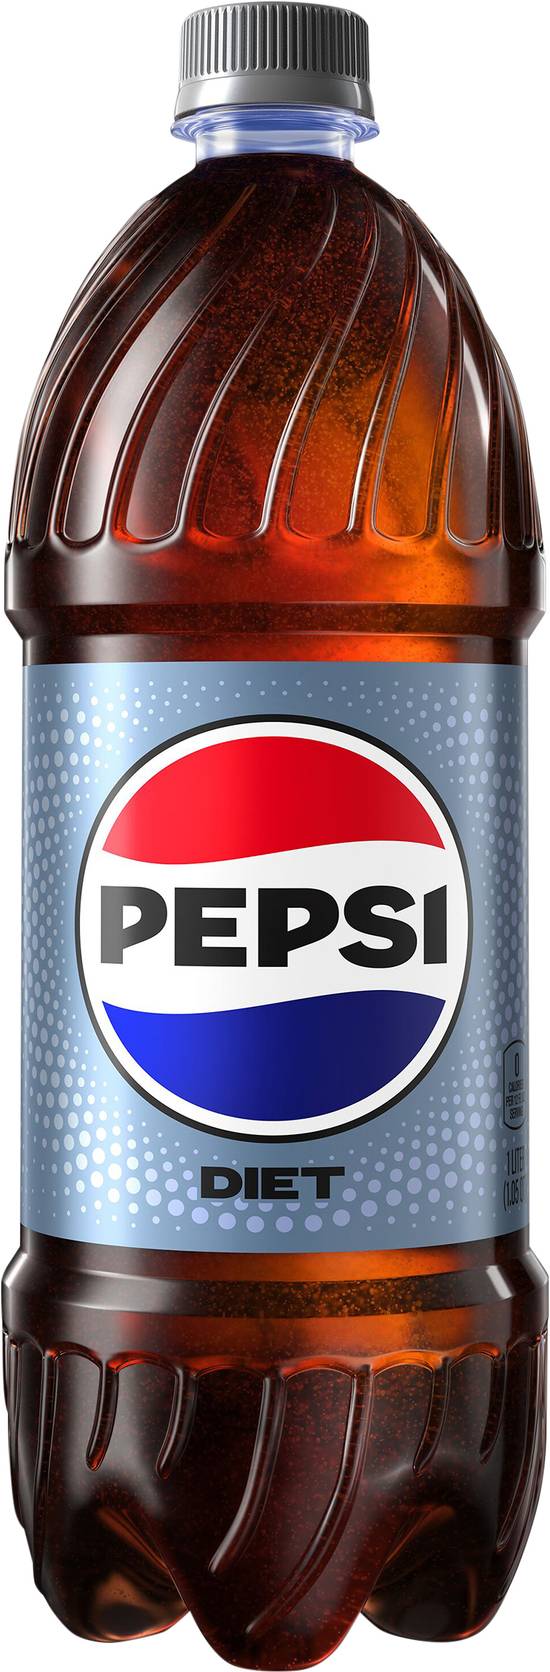 Pepsi Diet Cola Soda (1 L)